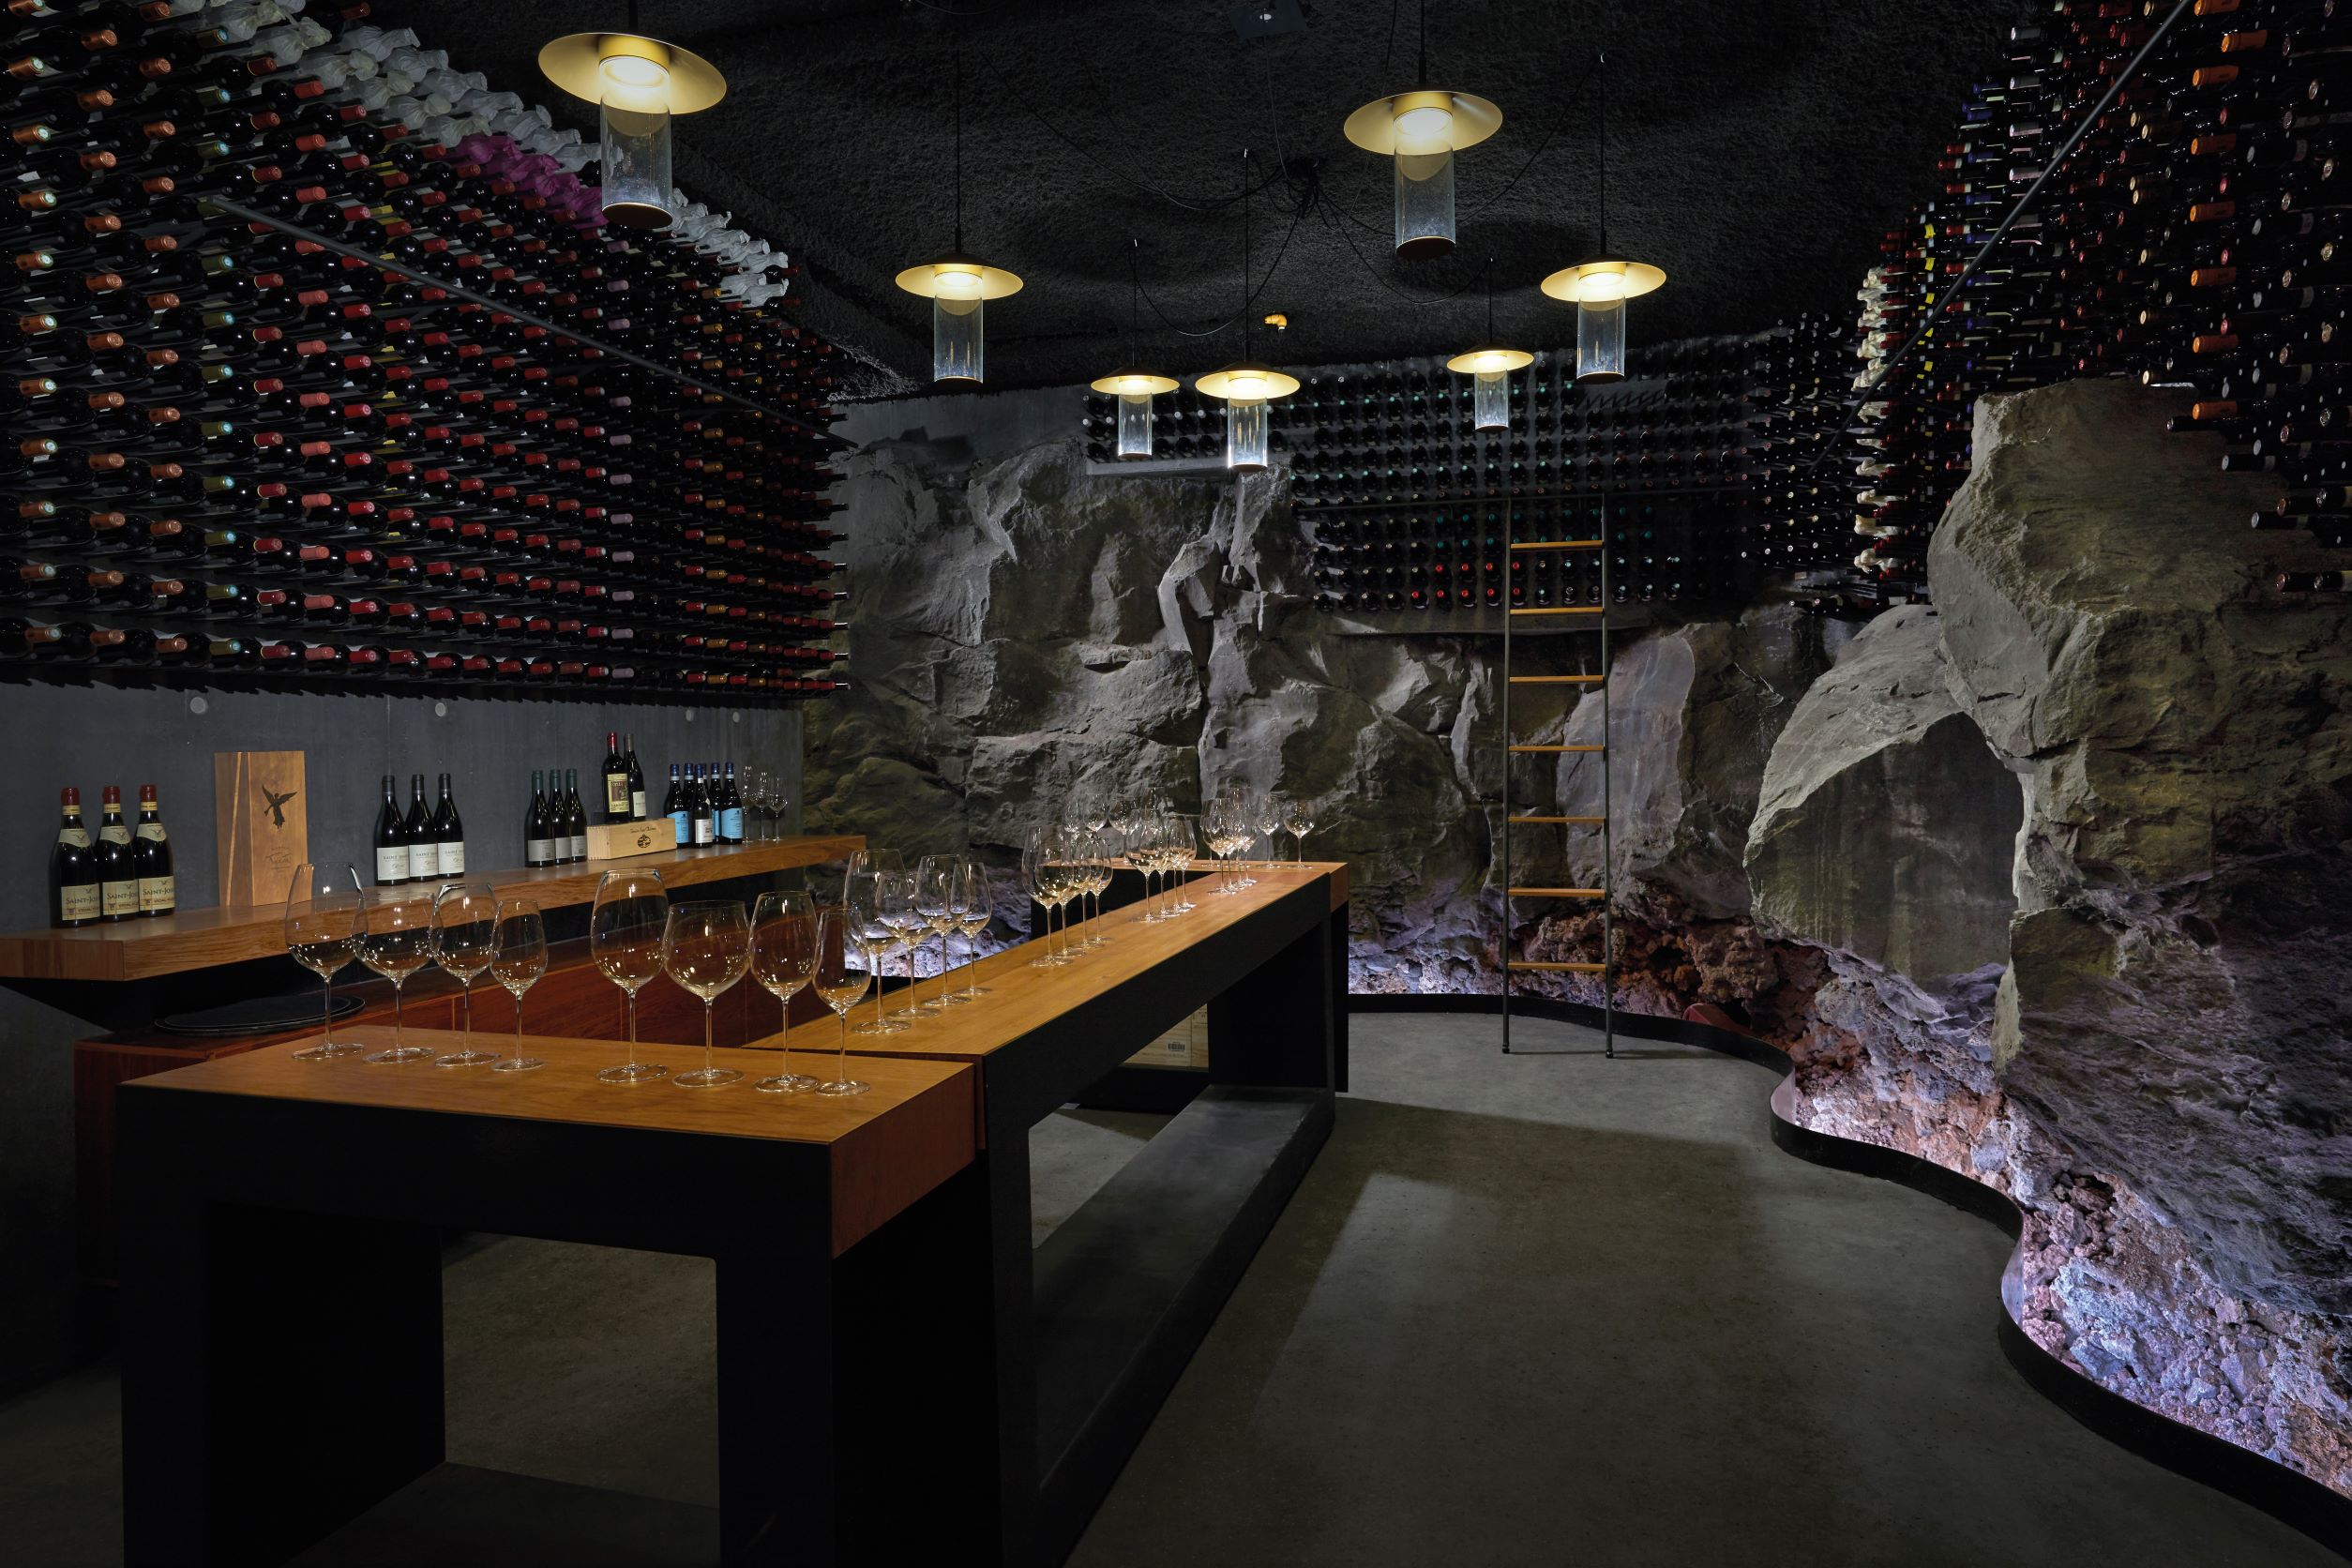 在葡萄酒窖里以岩石妆点出与户外熔岩地景相互连结的原始情调。